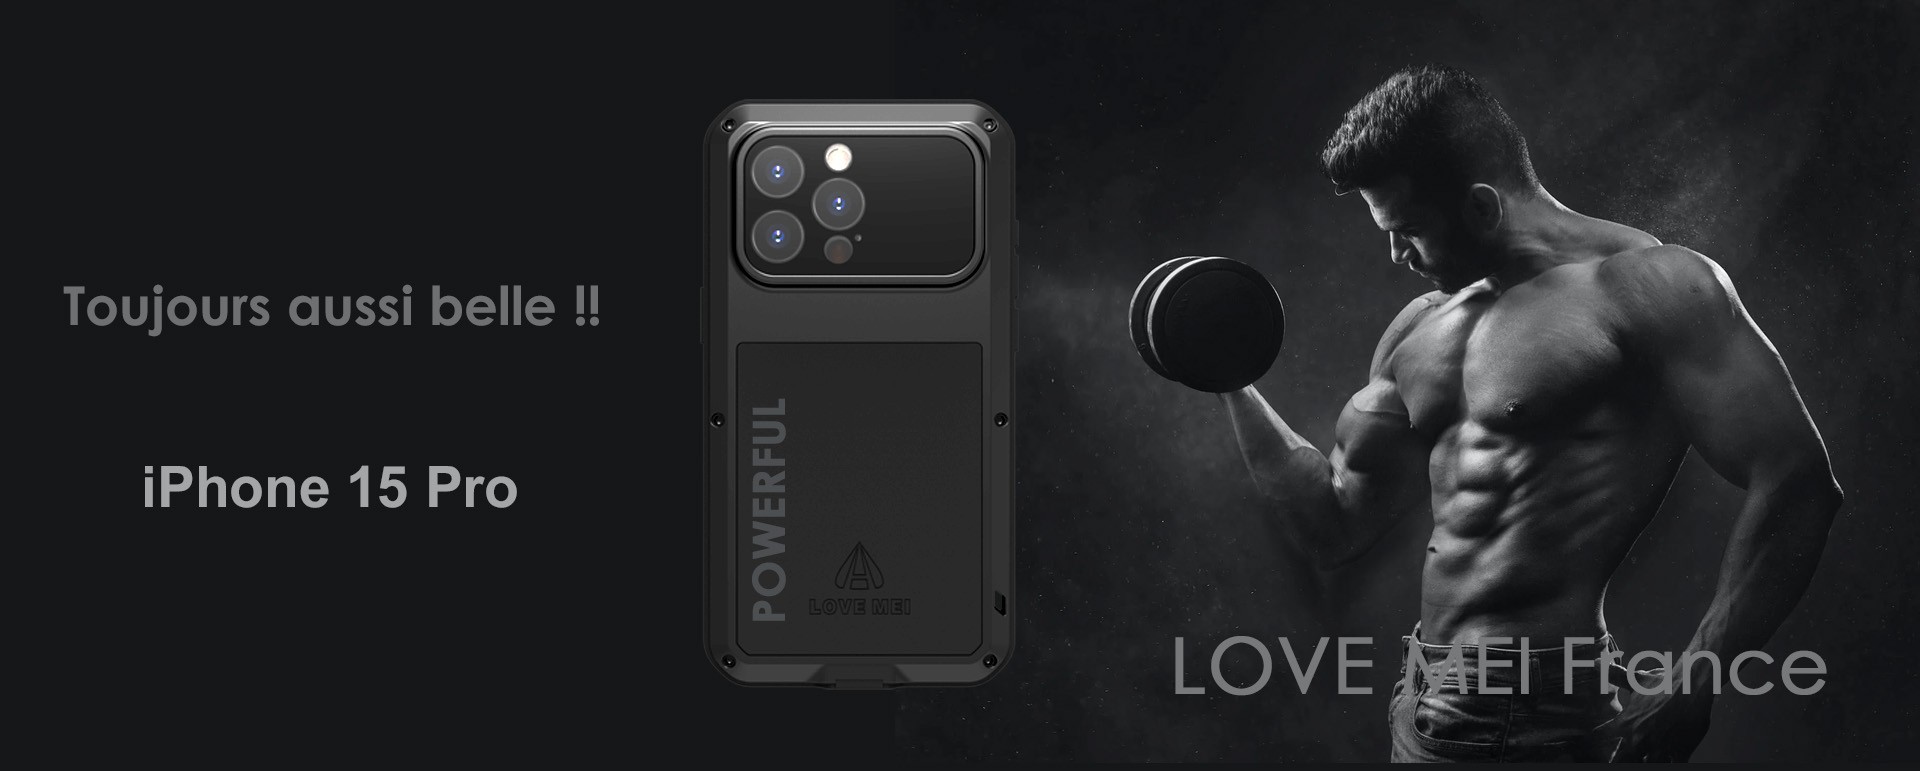 Écran de protection 3D antichoc pour iPhone 11 Pro - LOVE MEI France